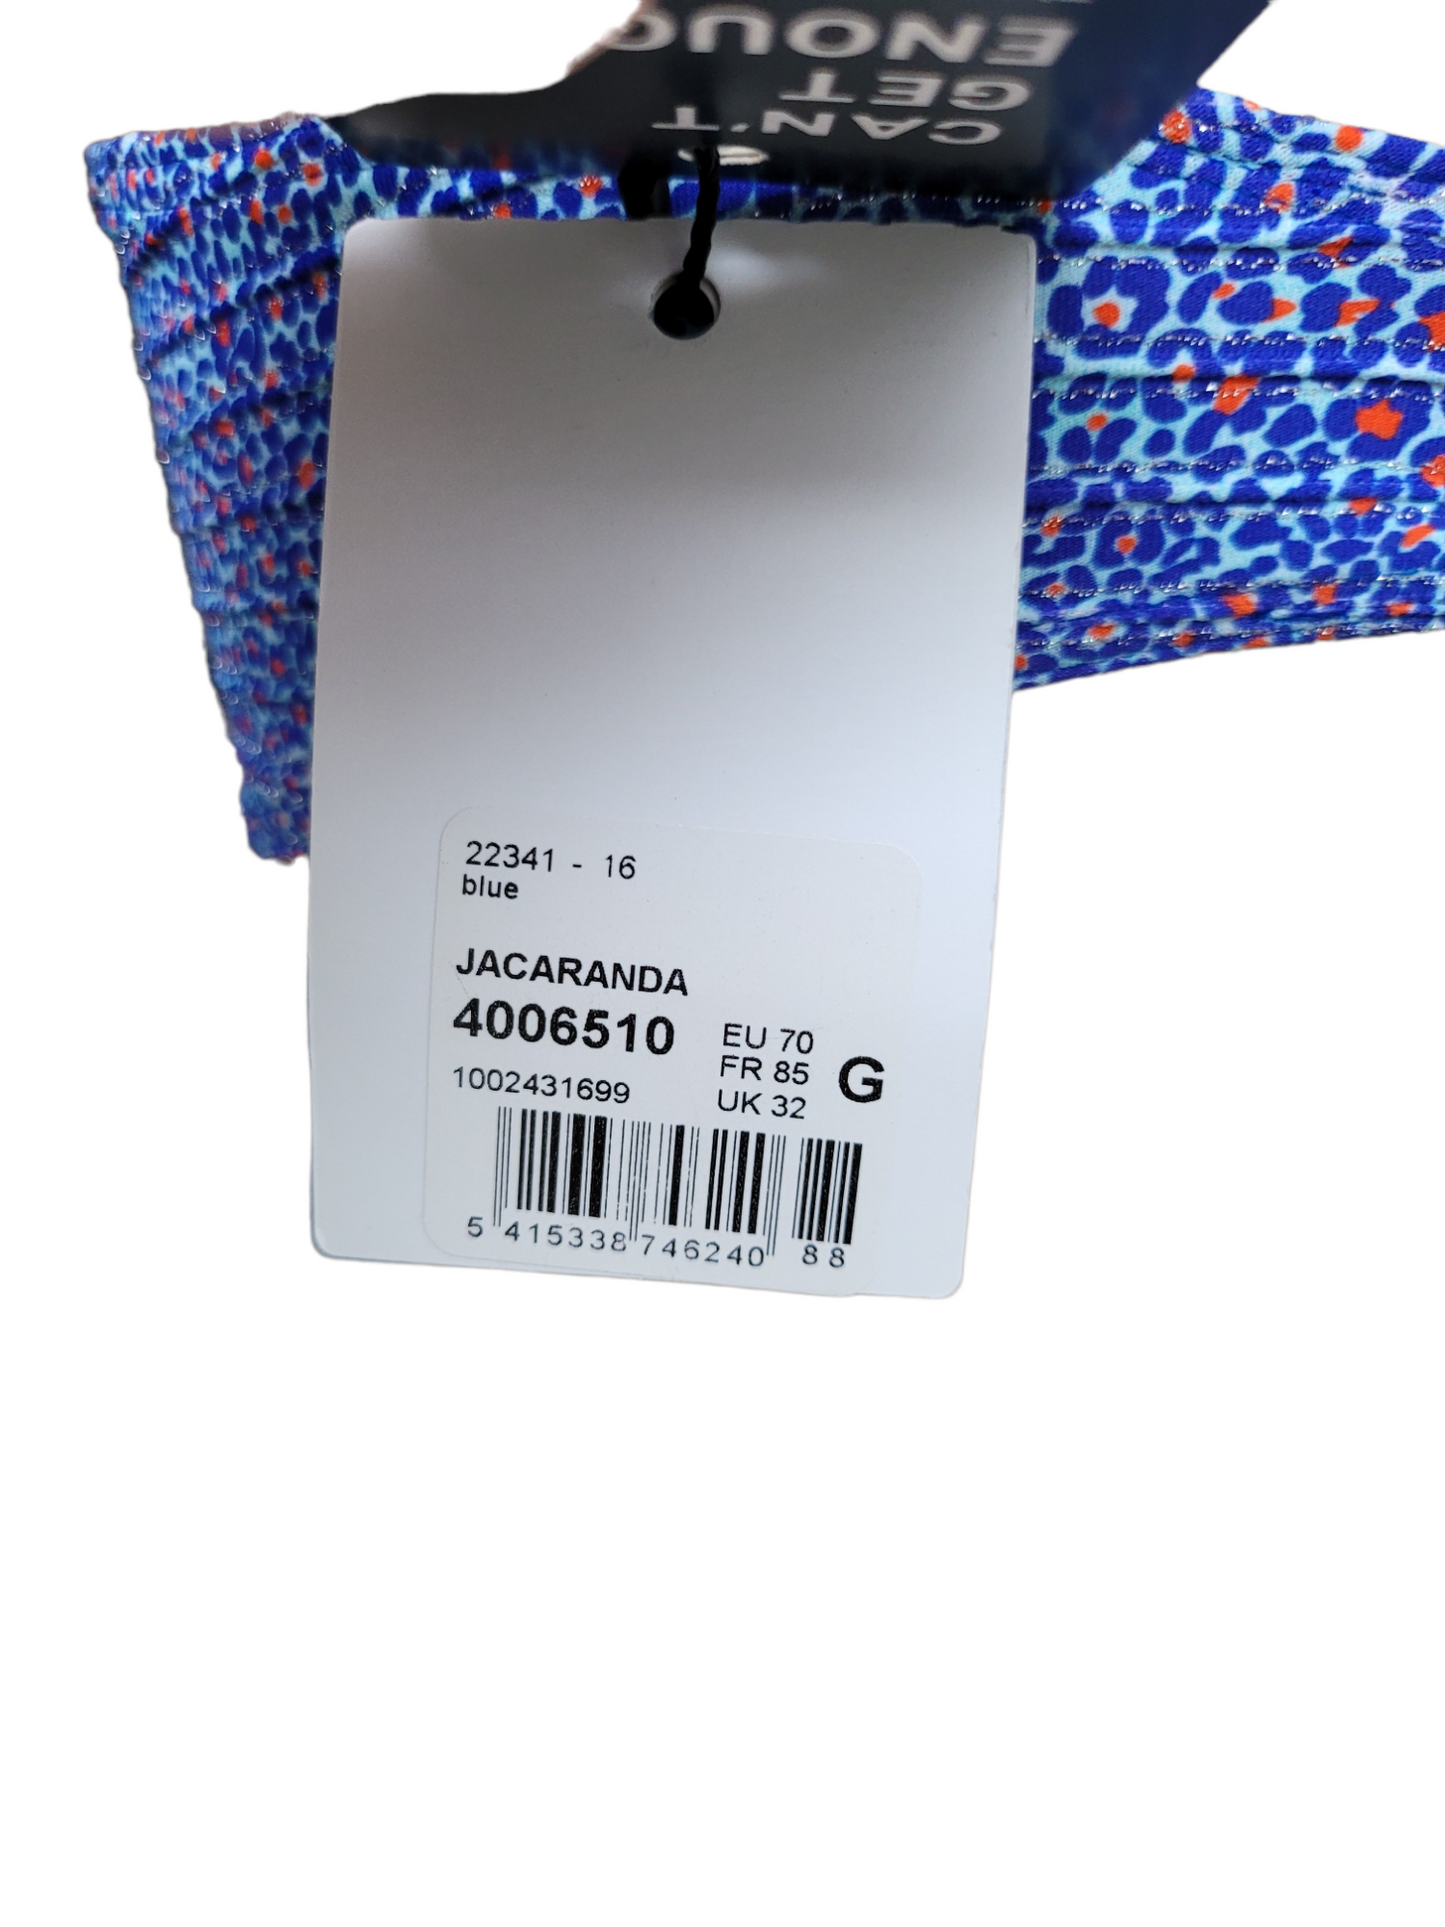 Prima Donna - Jacaranda Blue bikini set